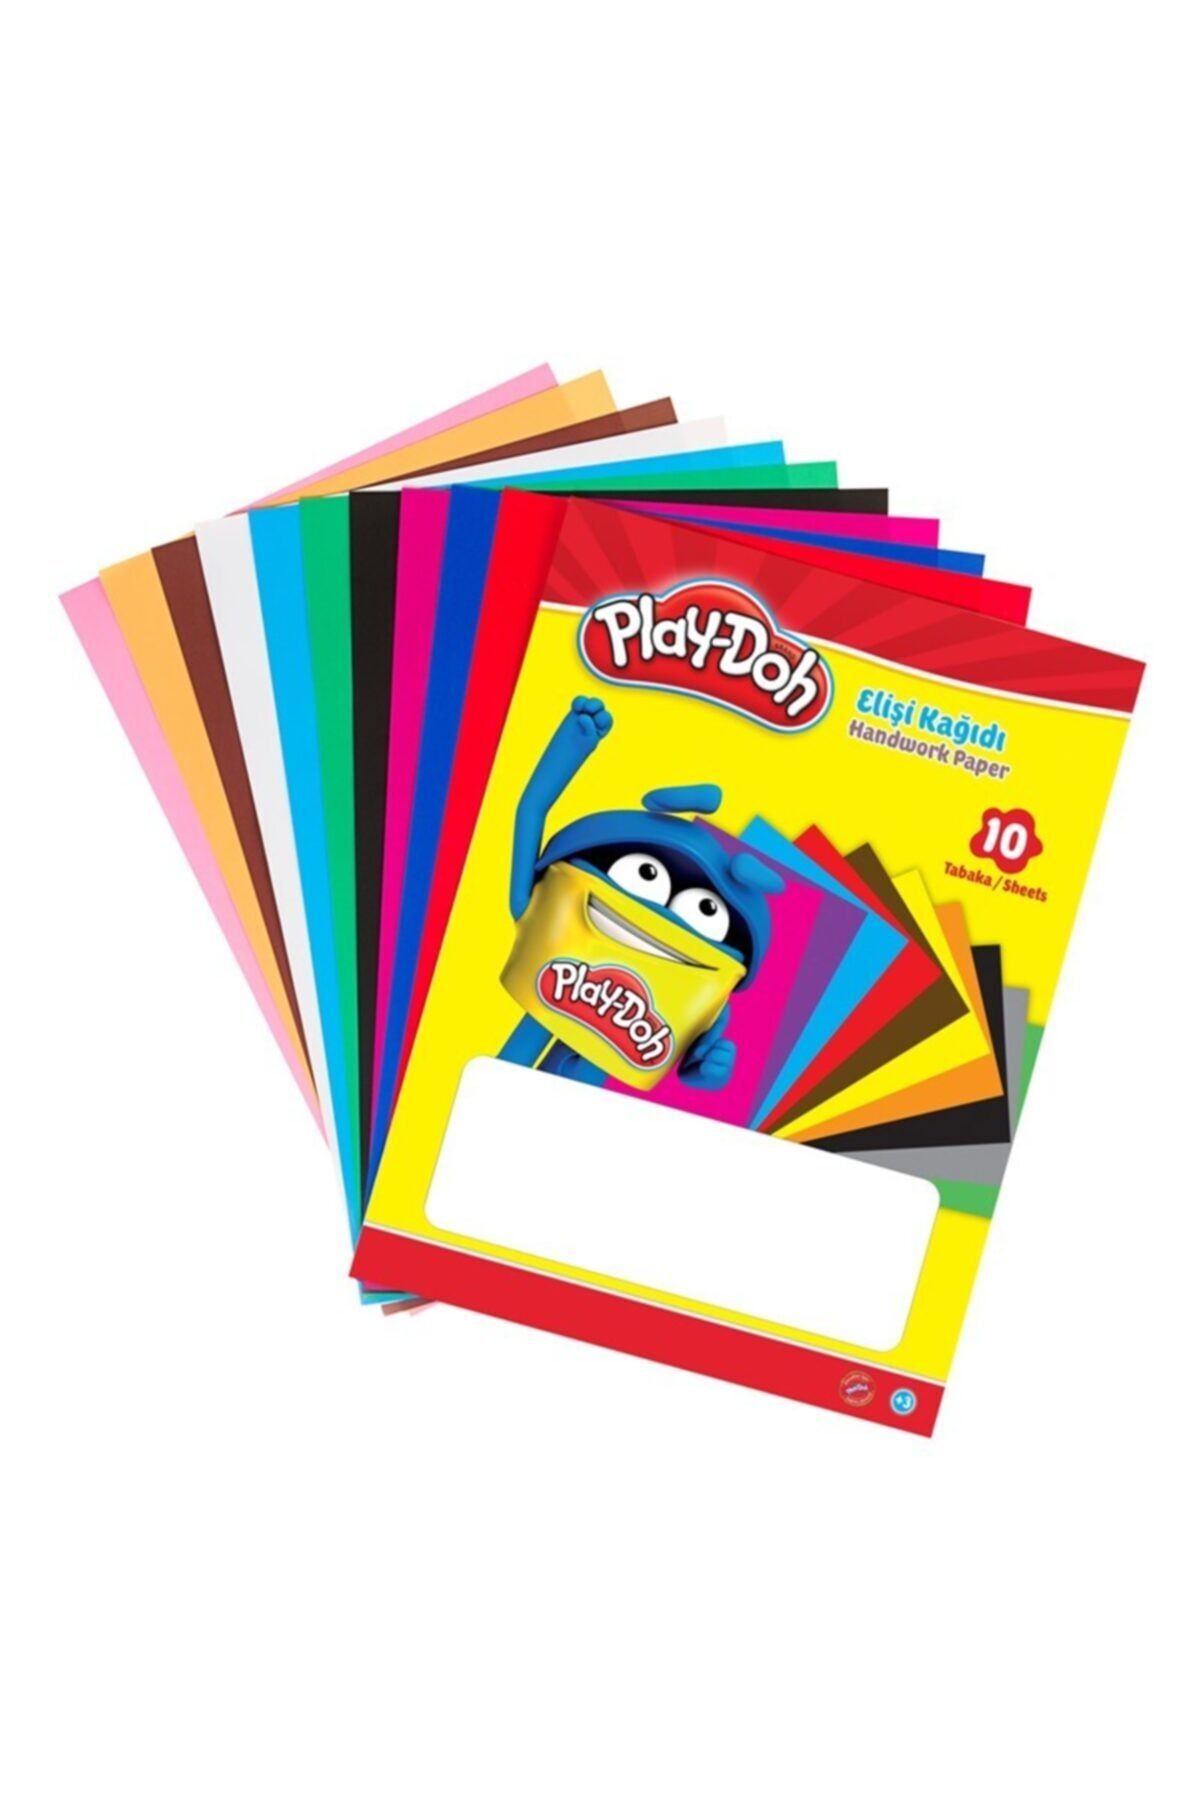 Play Doh Play-doh Elişi Kağıdı 10 Renk